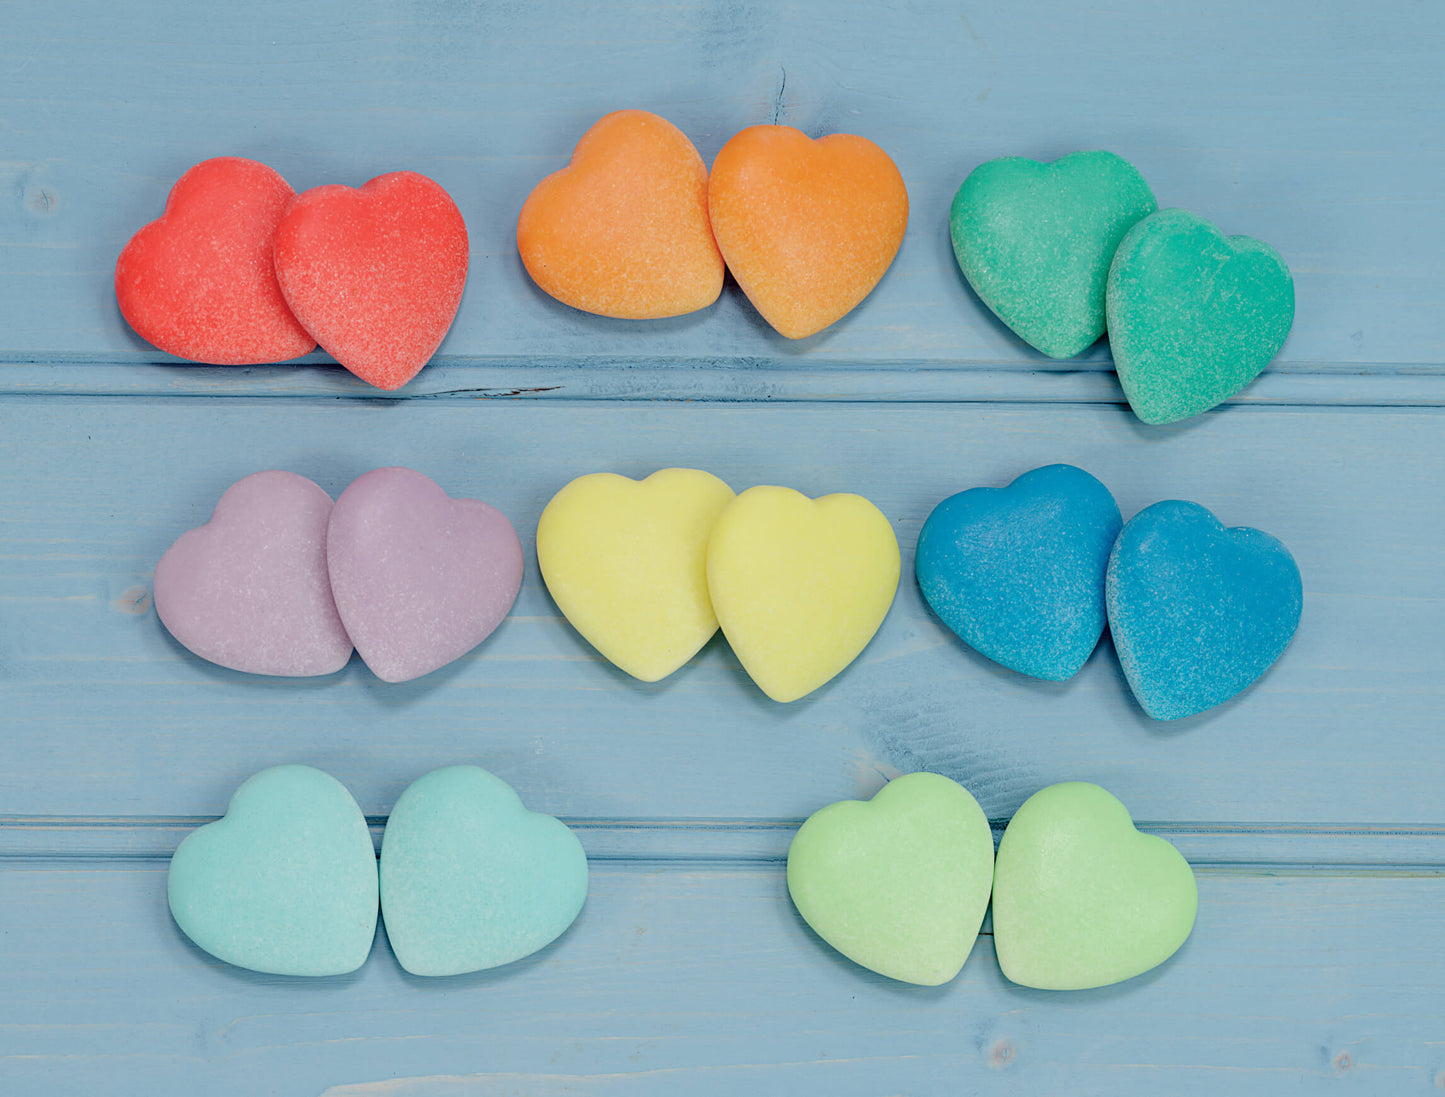 Kindness hearts 16 stones